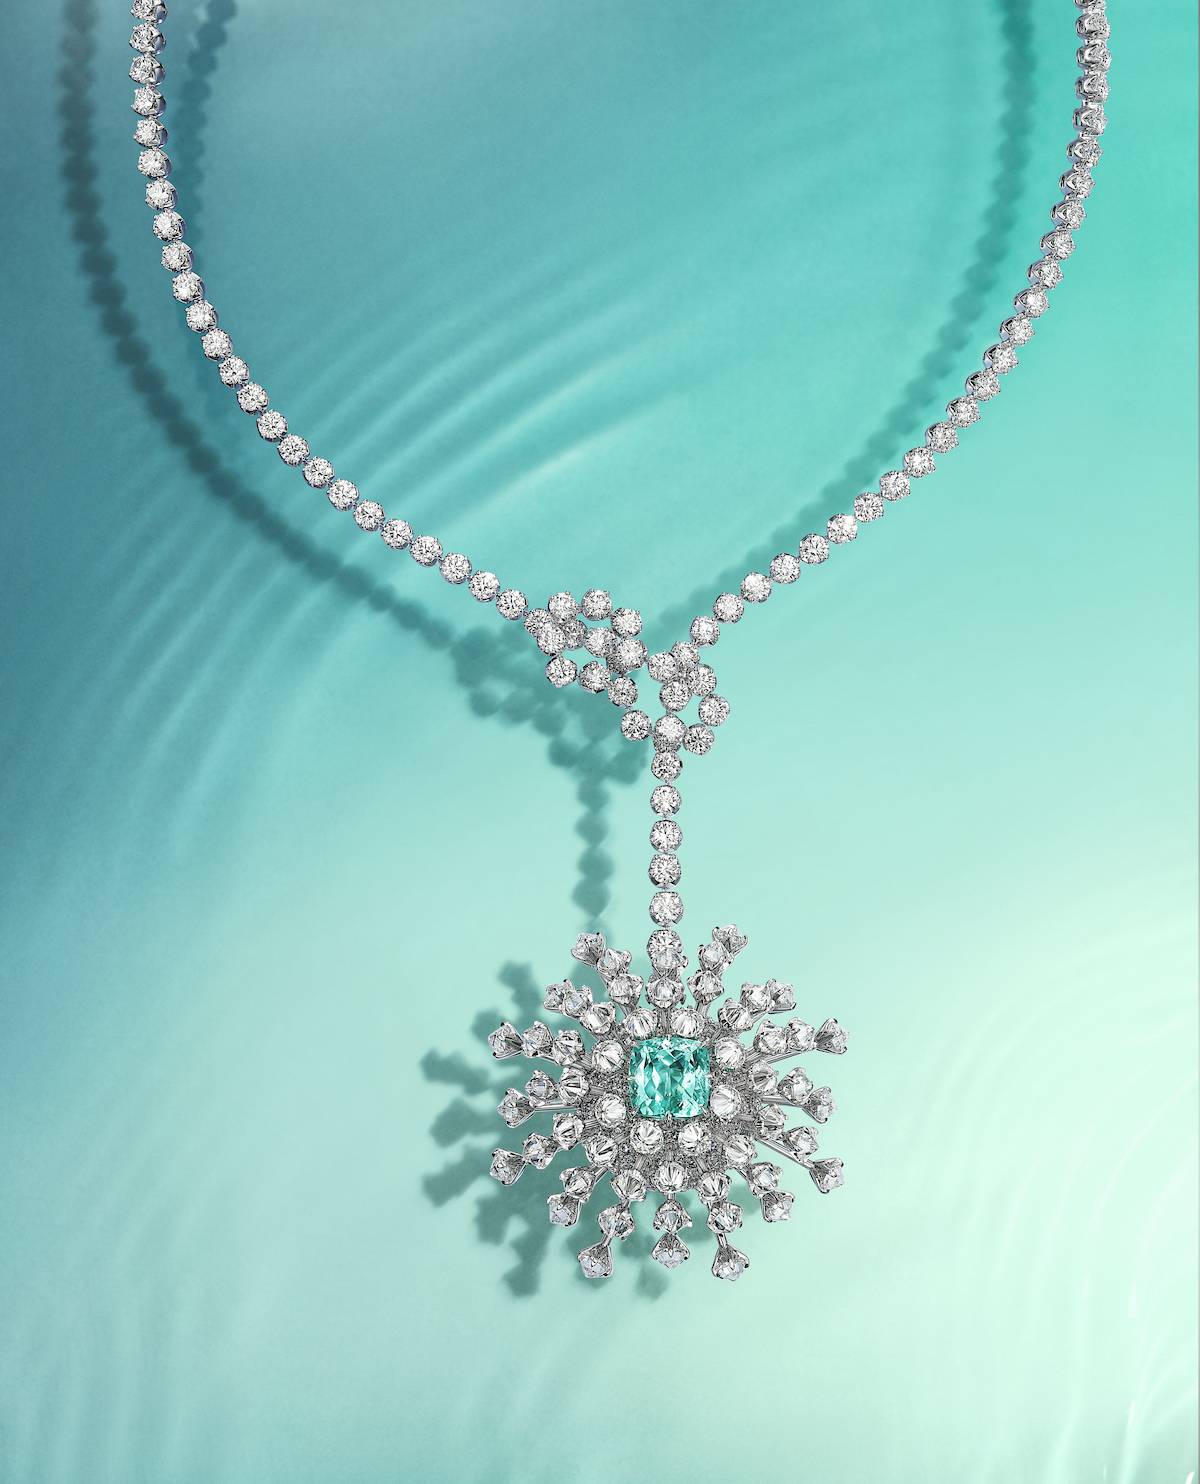 「花舞海葵 」項鏈展示18k白金鑲逾6克拉藍色含銅鋰碧璽、綠松石及鑽石吊墜。（圖片來源：Tiffany & Co.）